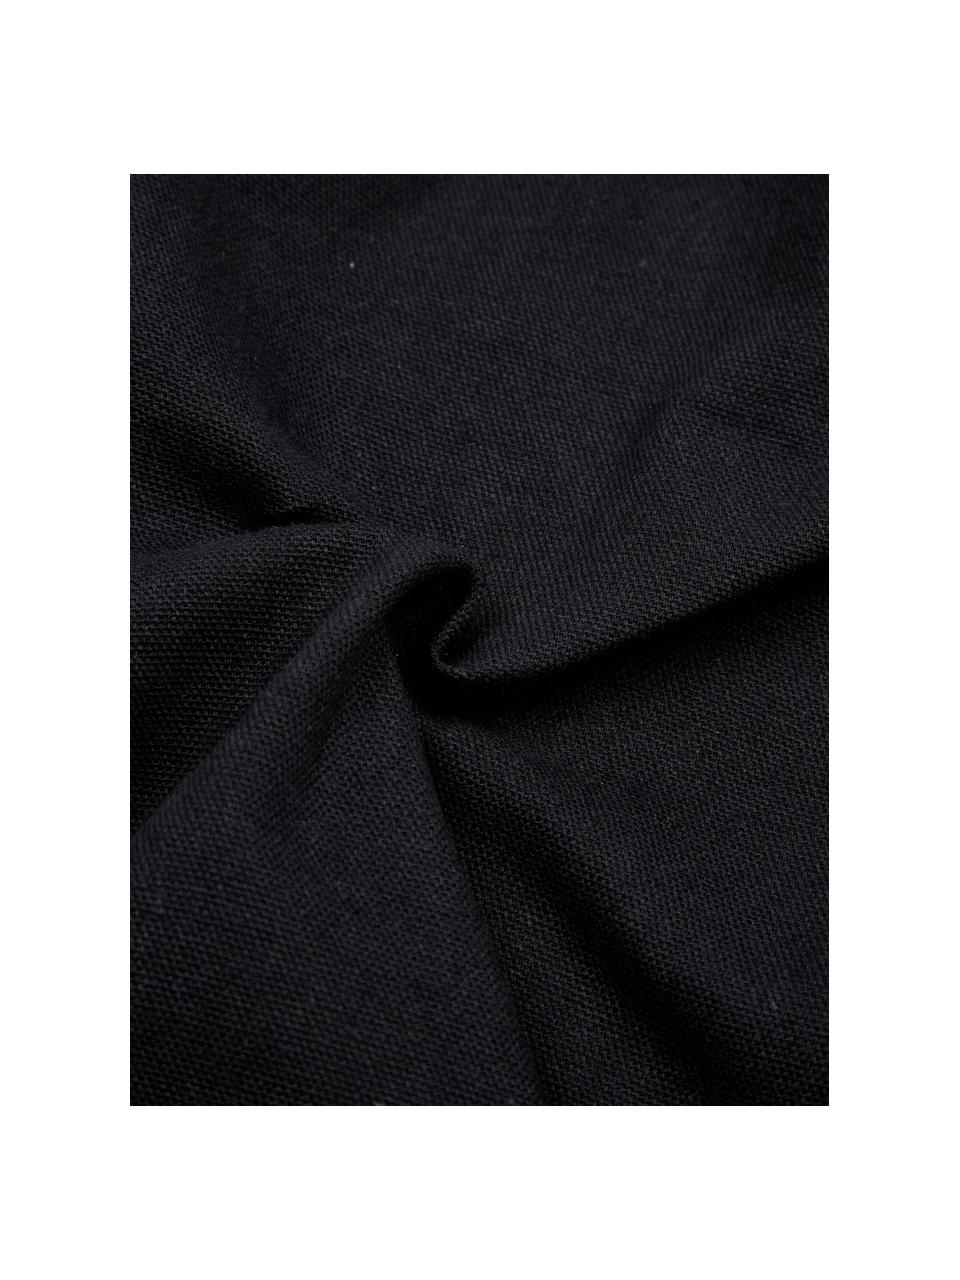 Kussenhoes Joana met decoratie, 100% katoen, Beige, zwart, 45 x 45 cm